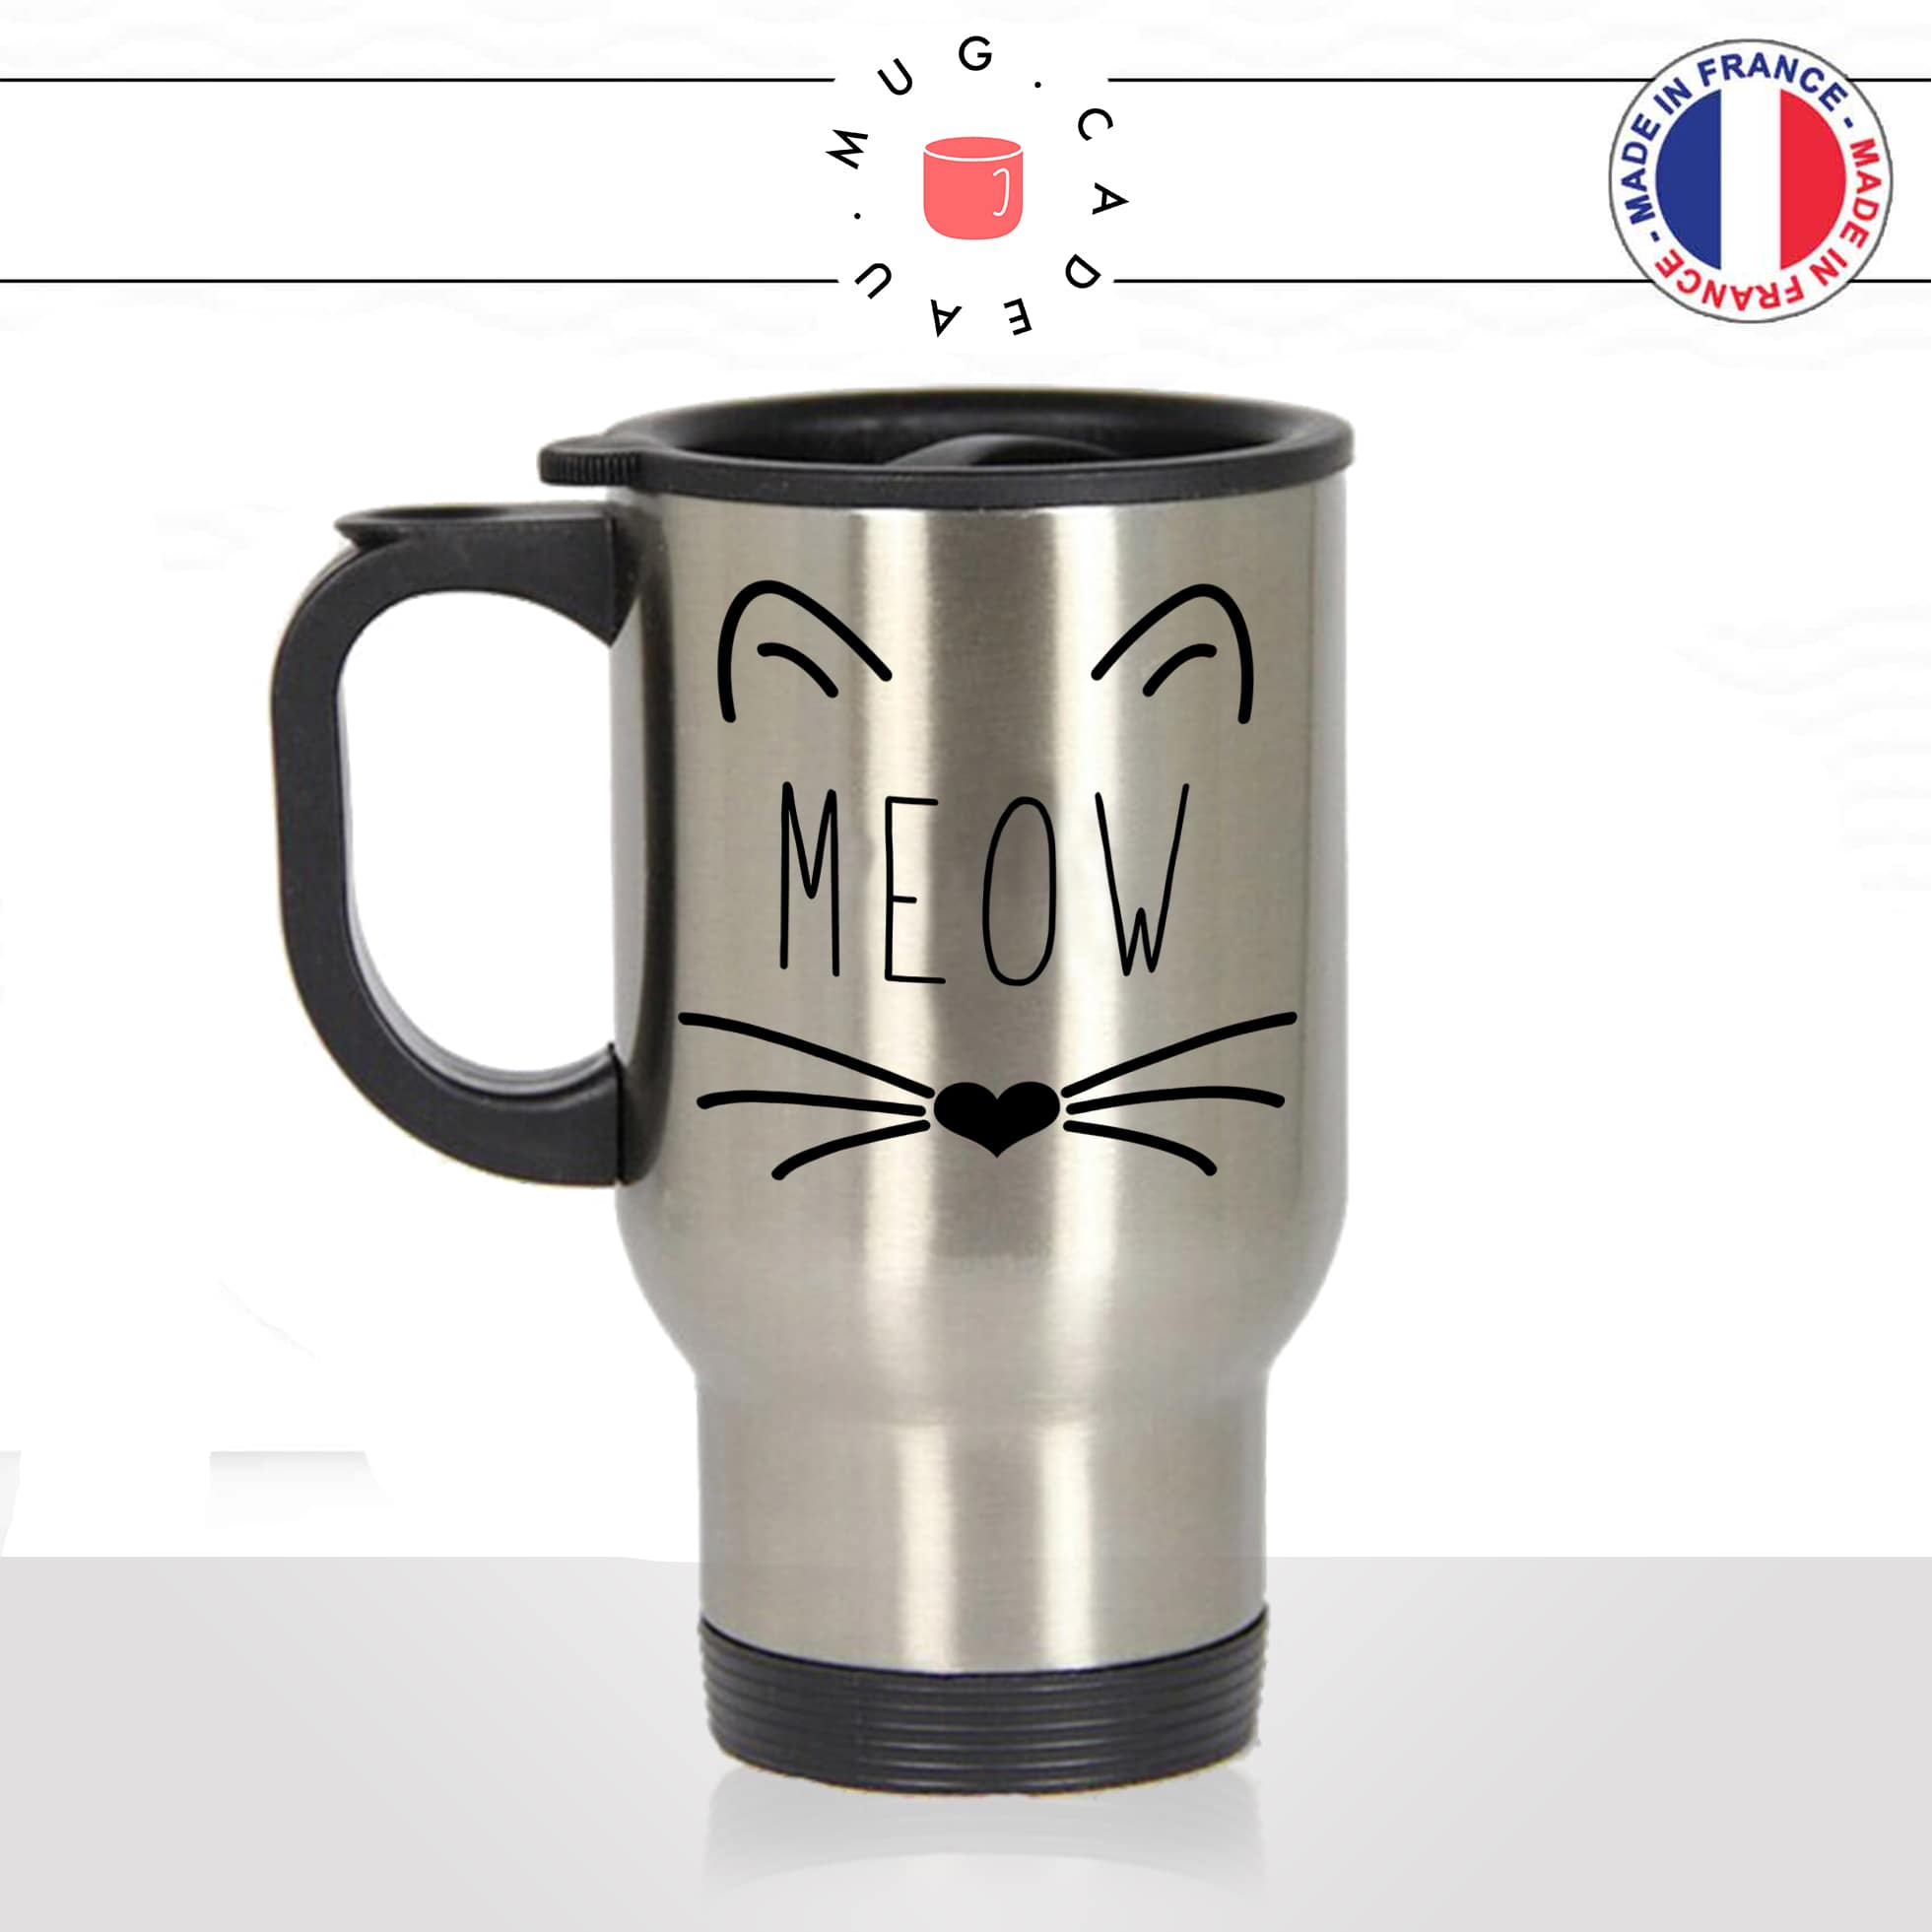 mug-tasse-thermos-de-voyage-café-thé-boisson-animal-animaux-chat-moustache-tete-coeur-meow-chaton-drole-idée-cadeau-original-fun-cool-min